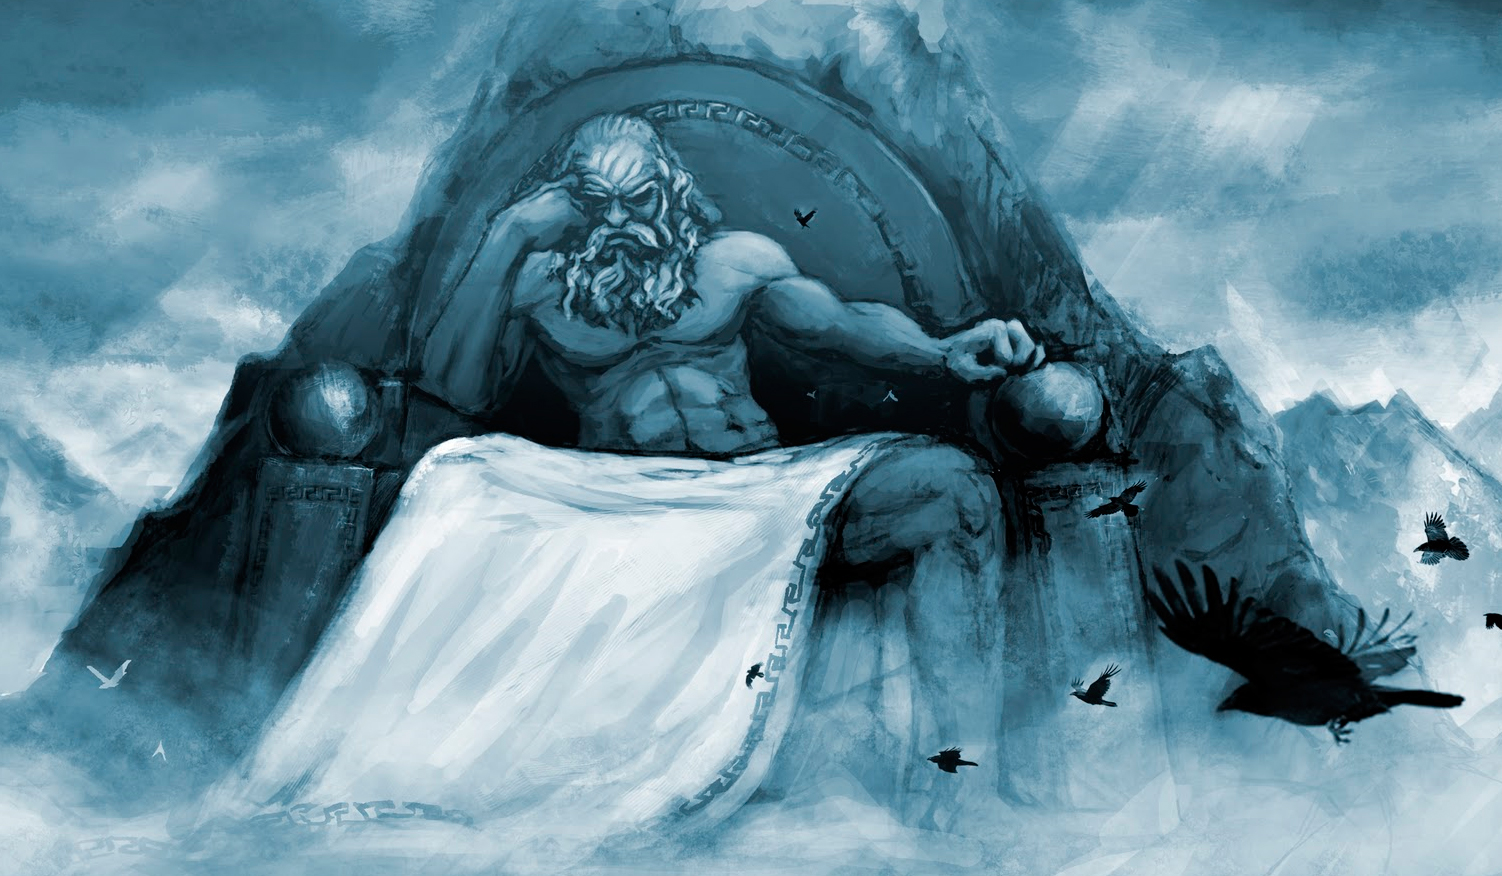 Cavaleiros do Zodíaco – A grande batalha dos deuses  A mitologia nórdica  entre os guerreiros de Athena – Minhas Insignificantes Observações